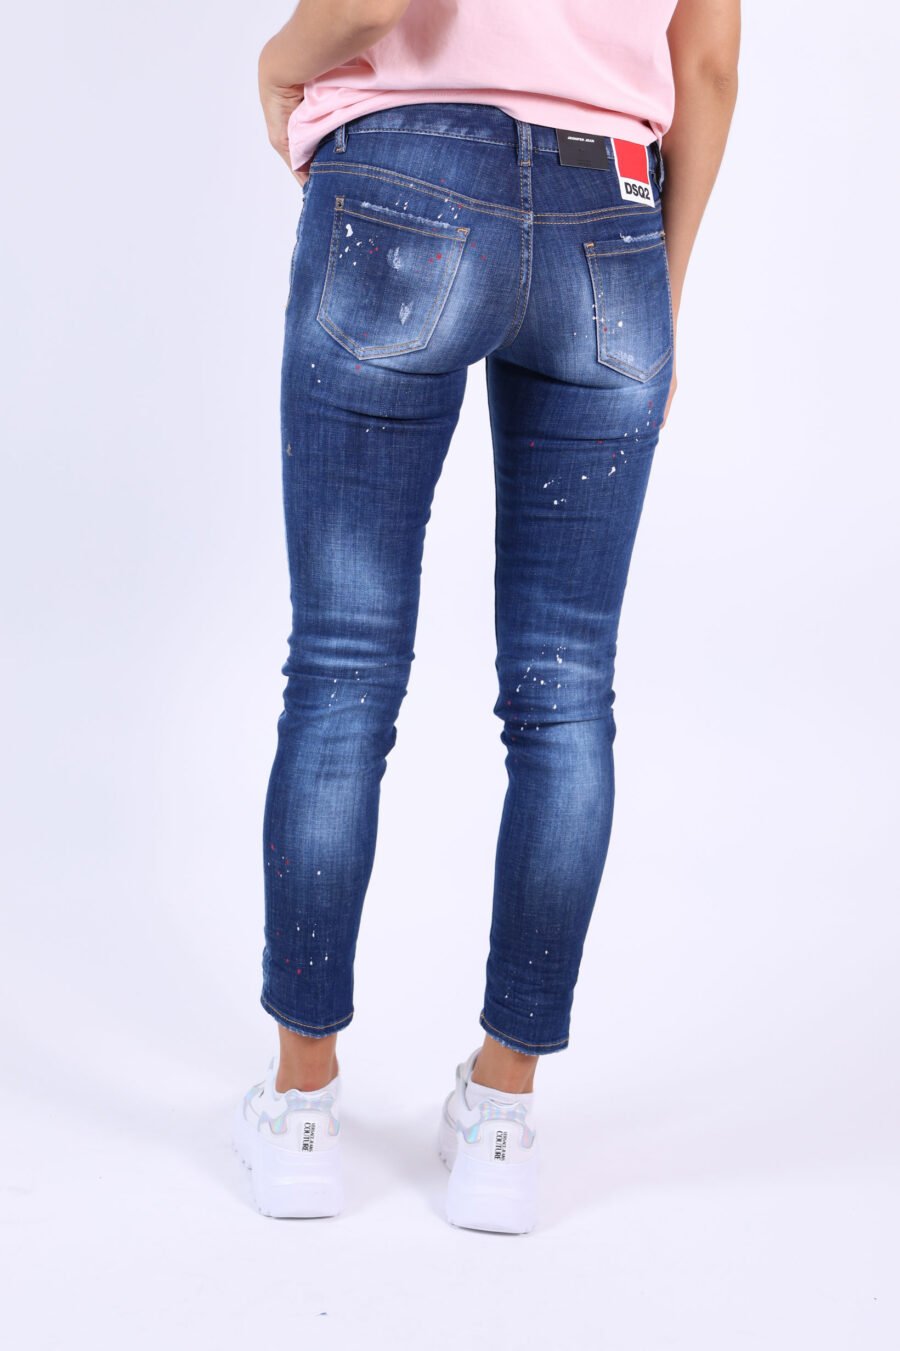 Jeans "Jennifer Jean" blau mit Farbspritzern und verblichenem Effekt - 361223054662201902